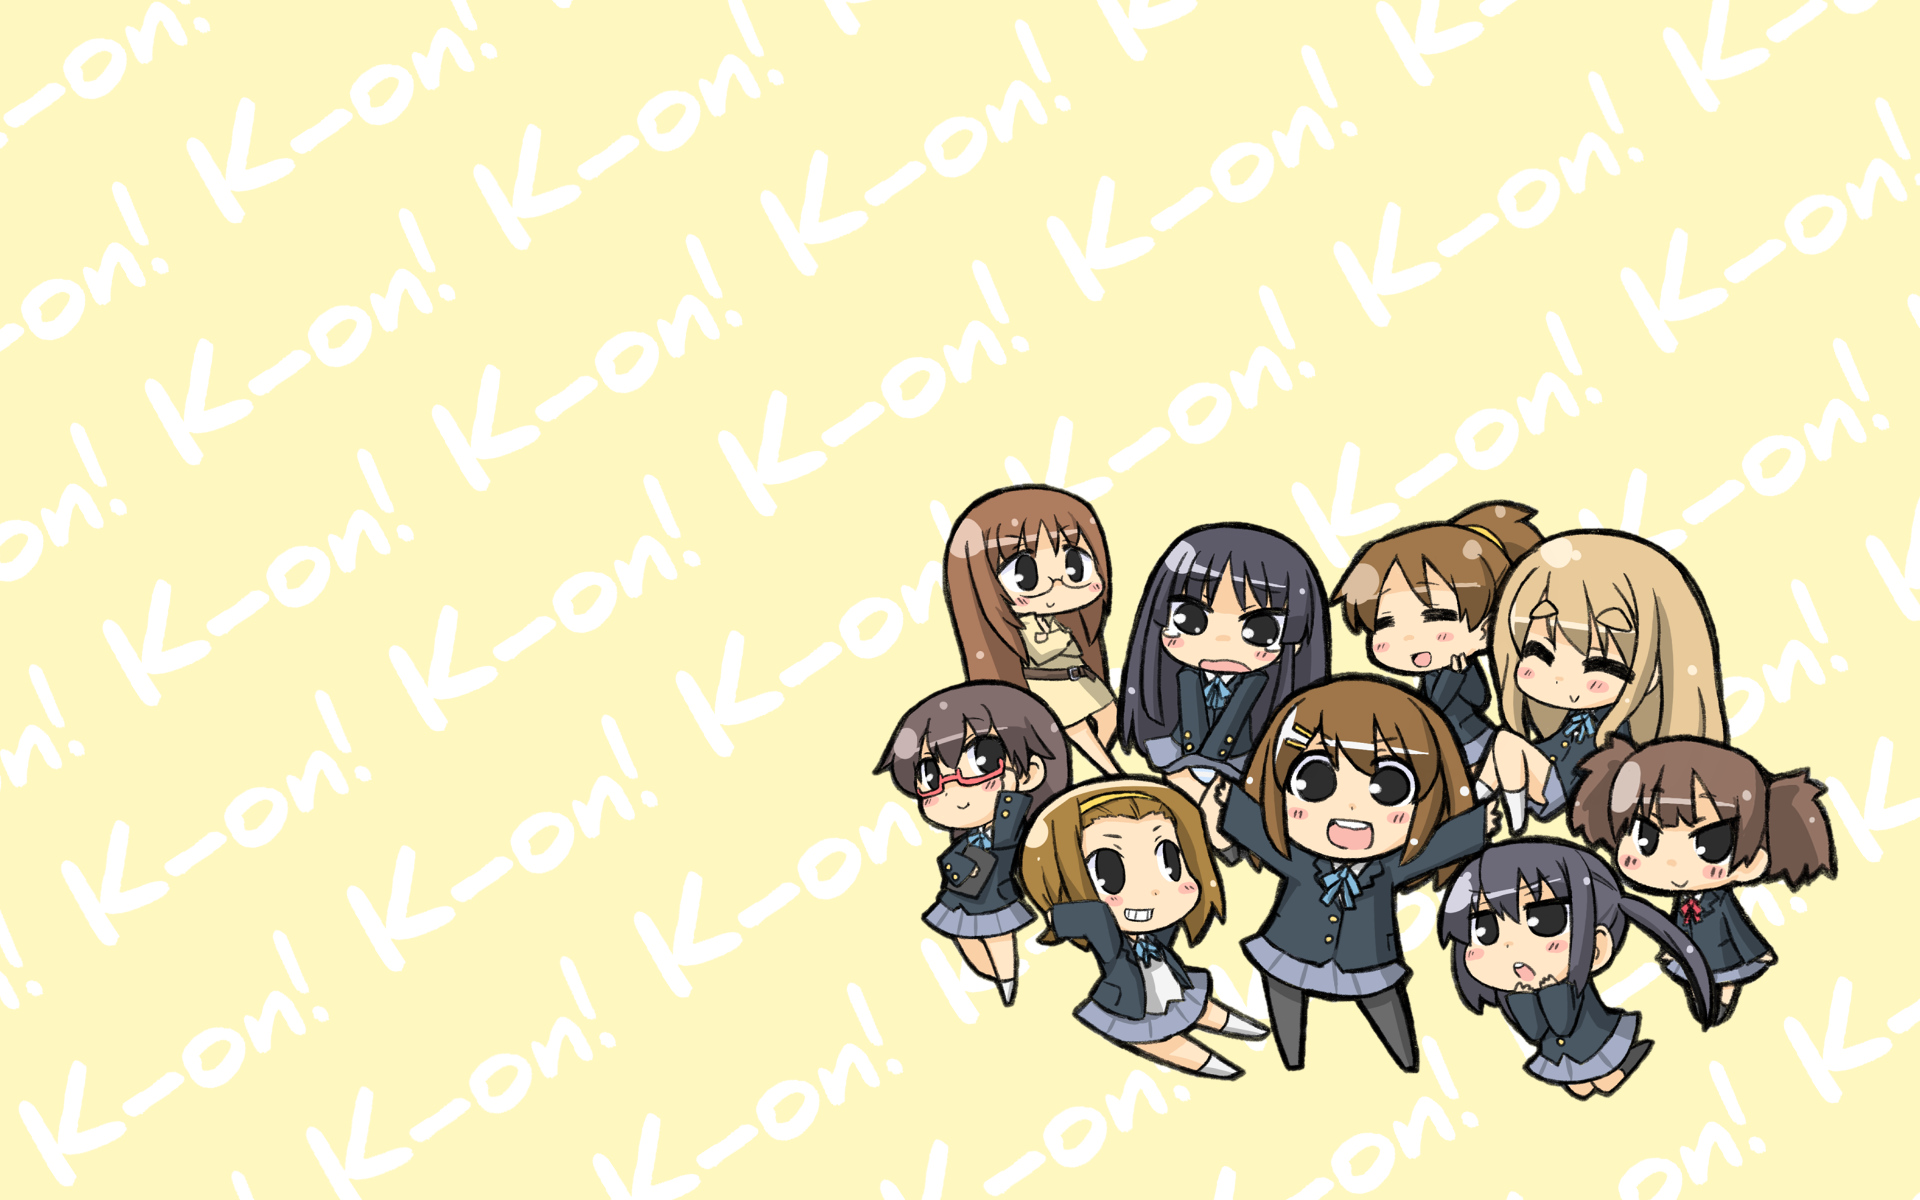 Group of friends from the anime K-On!, including Sawako, Mio, Ui, Tsumugi, Nodoka, Ritsu, Yui, Azusa, and Jun.